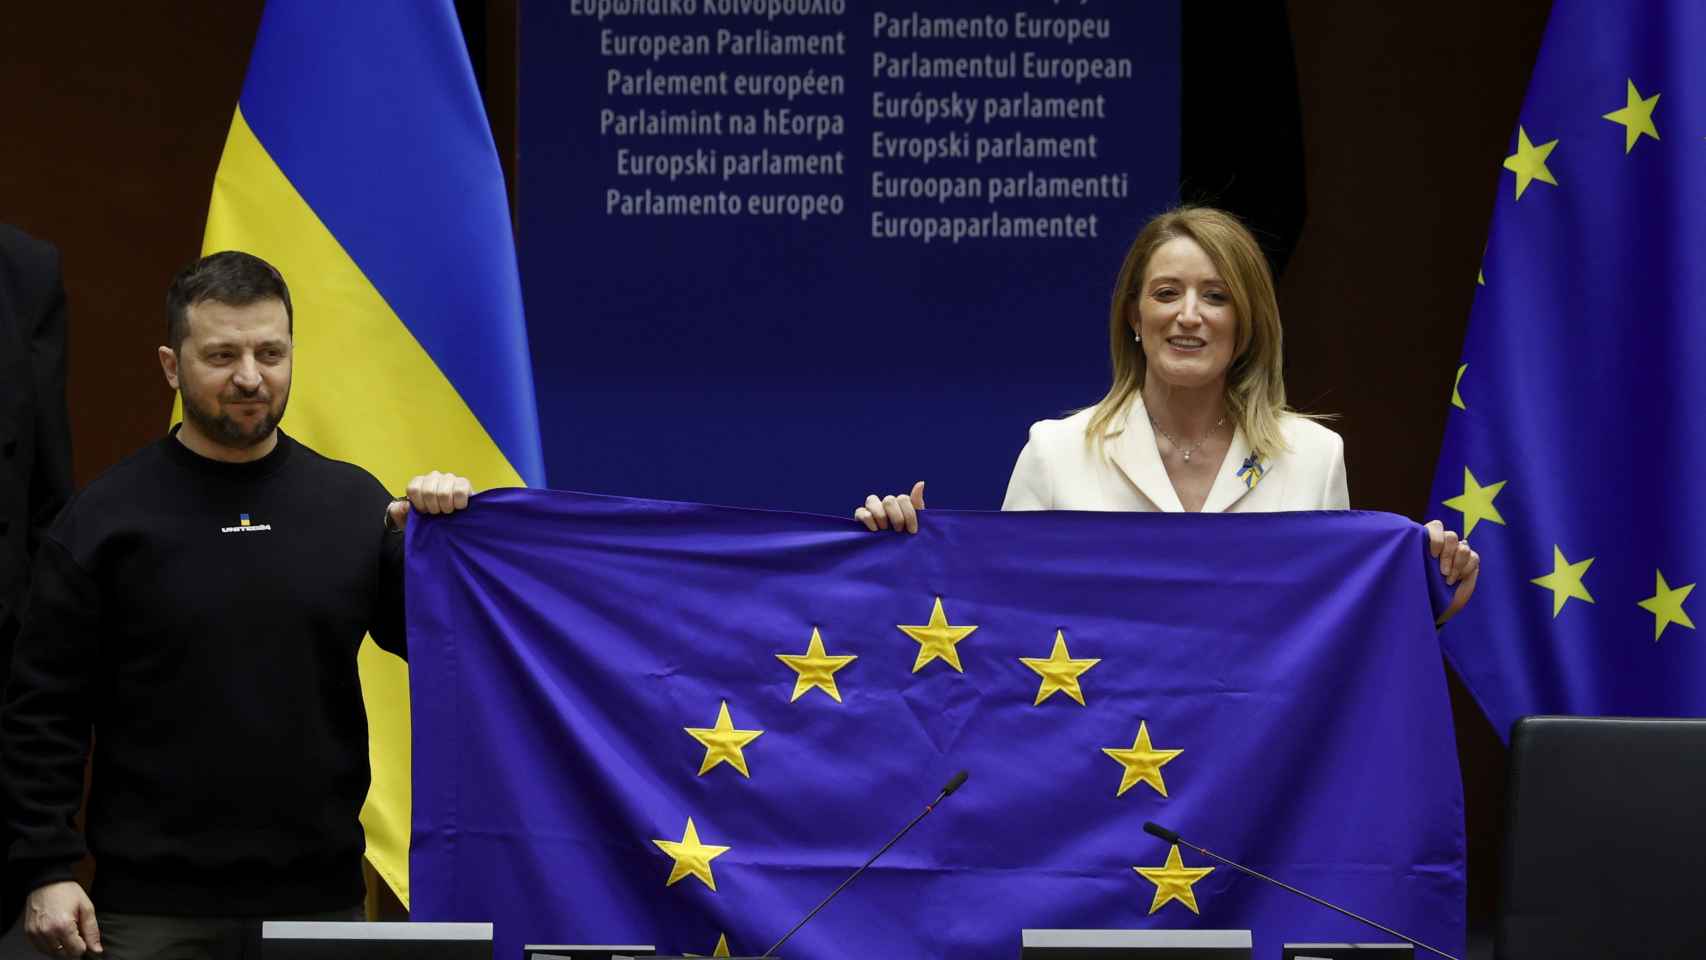 Volodímir Zelenski, presidente de Ucrania, sostiene una bandera de la UE junto a Roberta Metsola, presidenta del Parlamento Europeo.